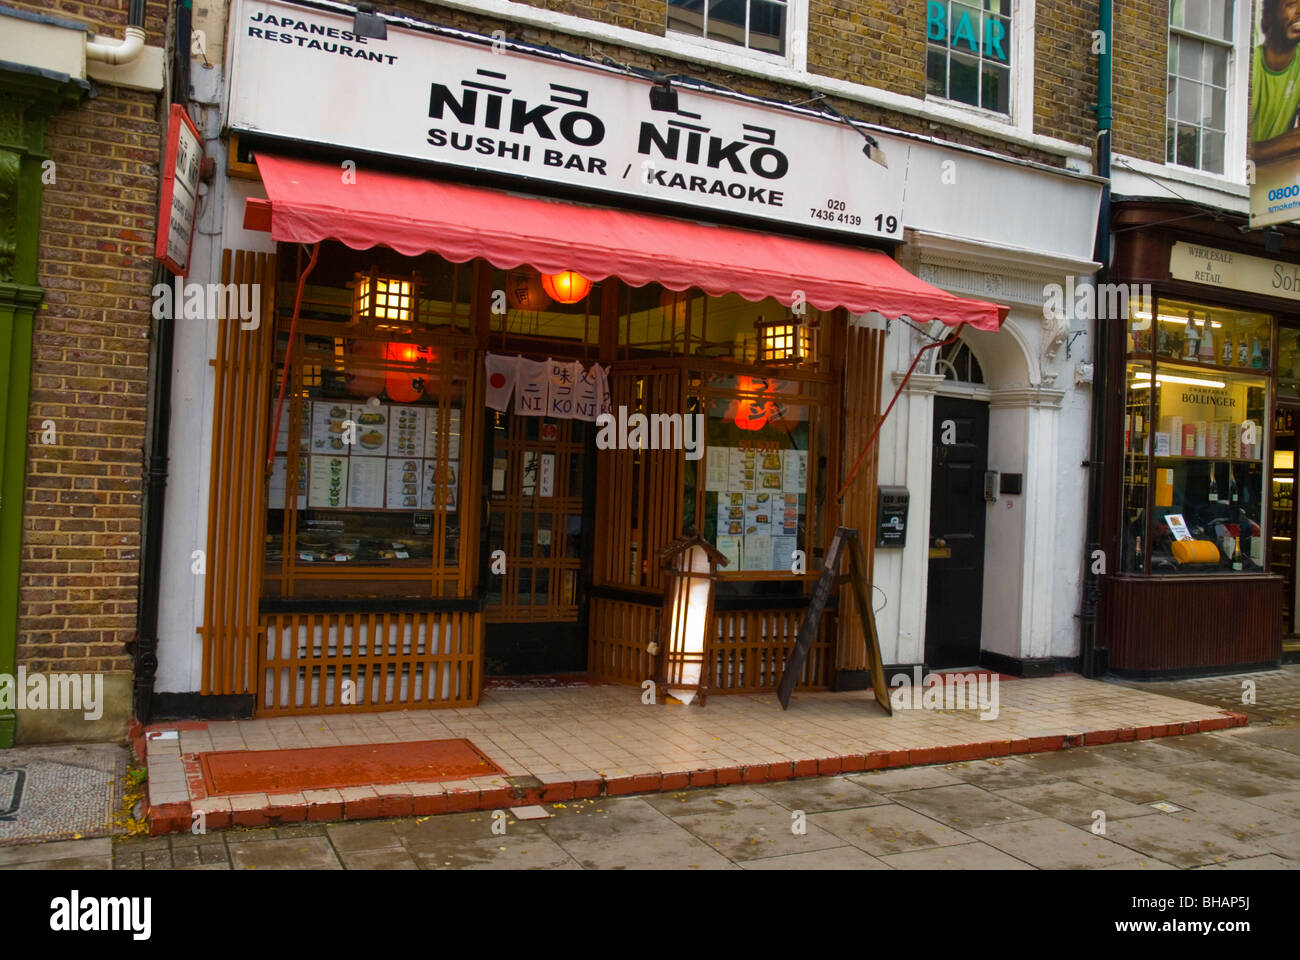 Japanese Sushi and Sushi Bar central London England UK Europe Stock Photo -  Alamy